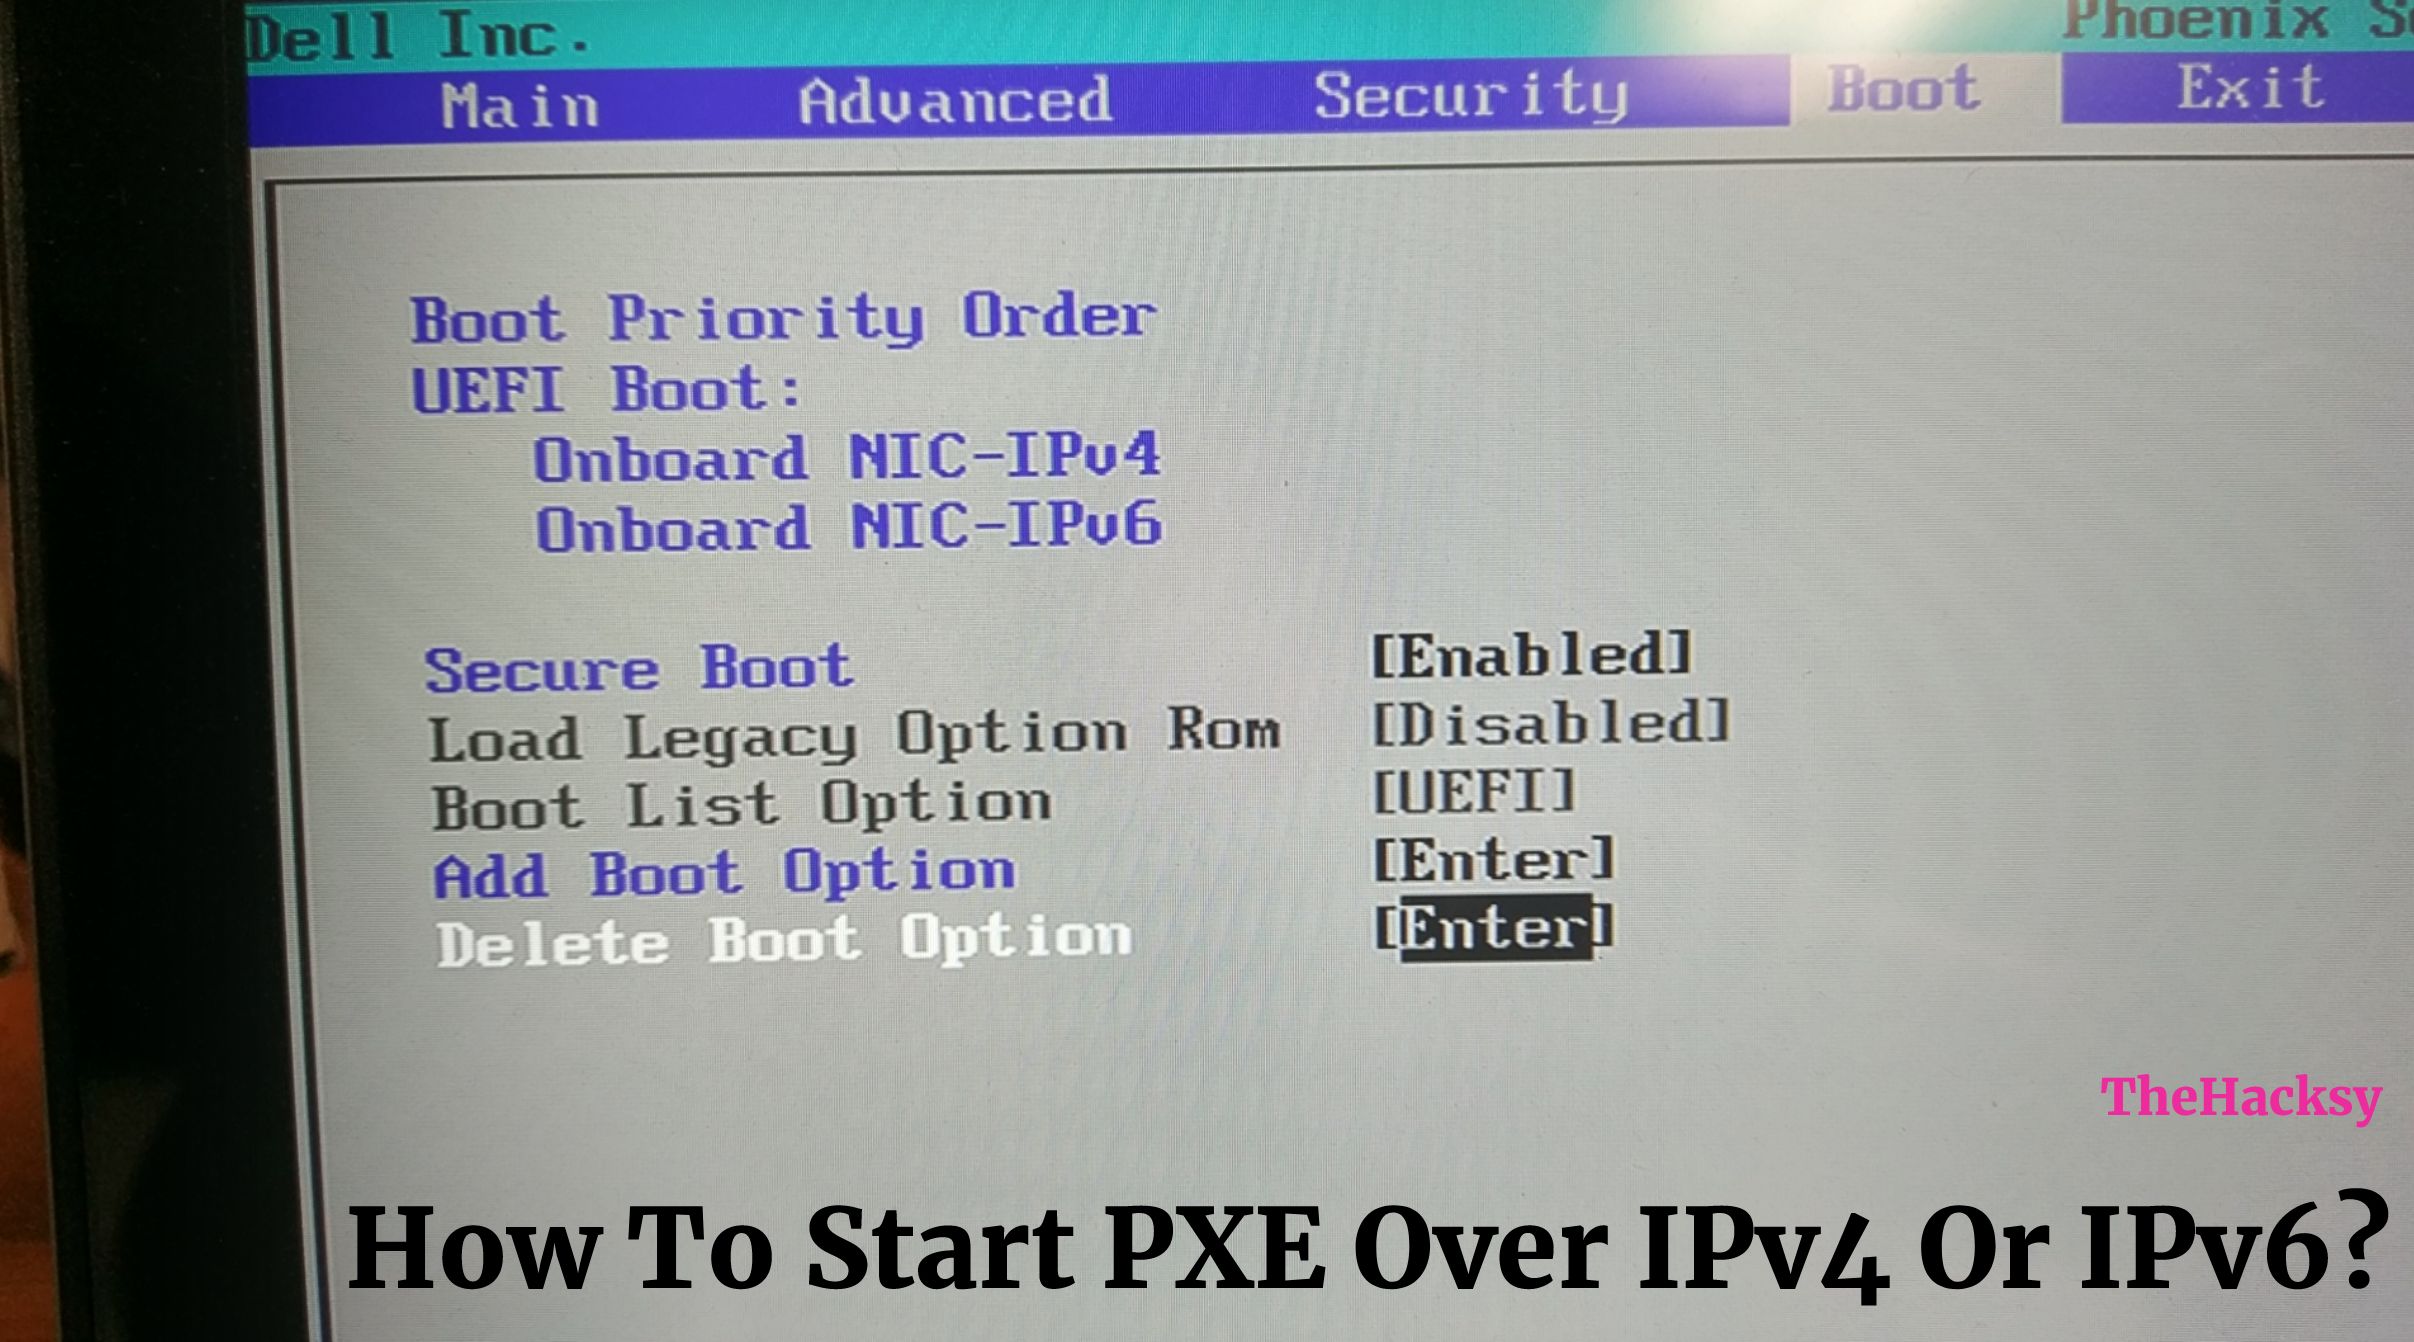 Start PXE Over IPv4 Or IPv6